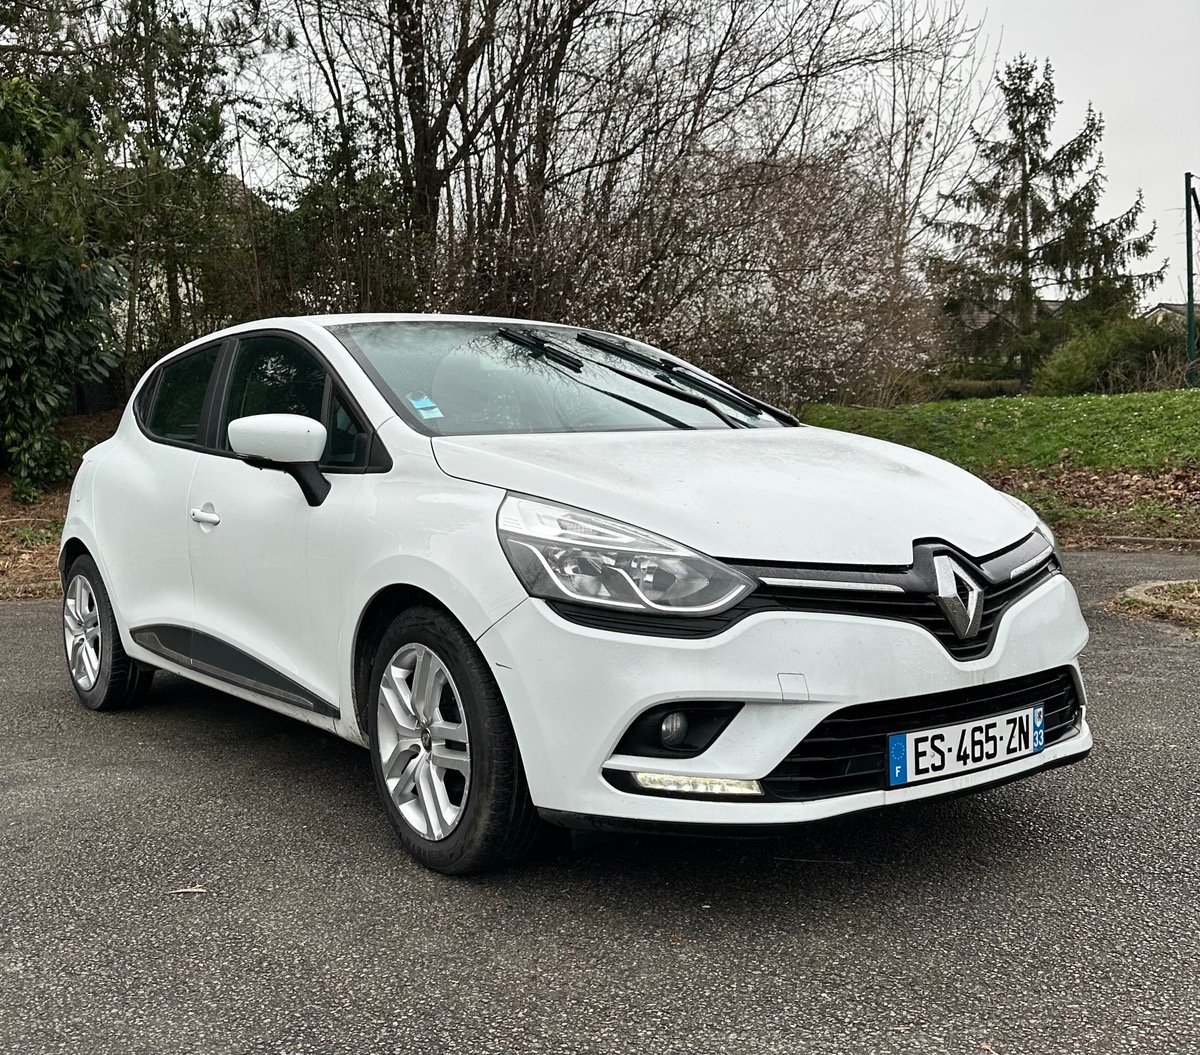 Renault Clio 4 / 1 er main / modifiable en 5 places garantie 3 mois